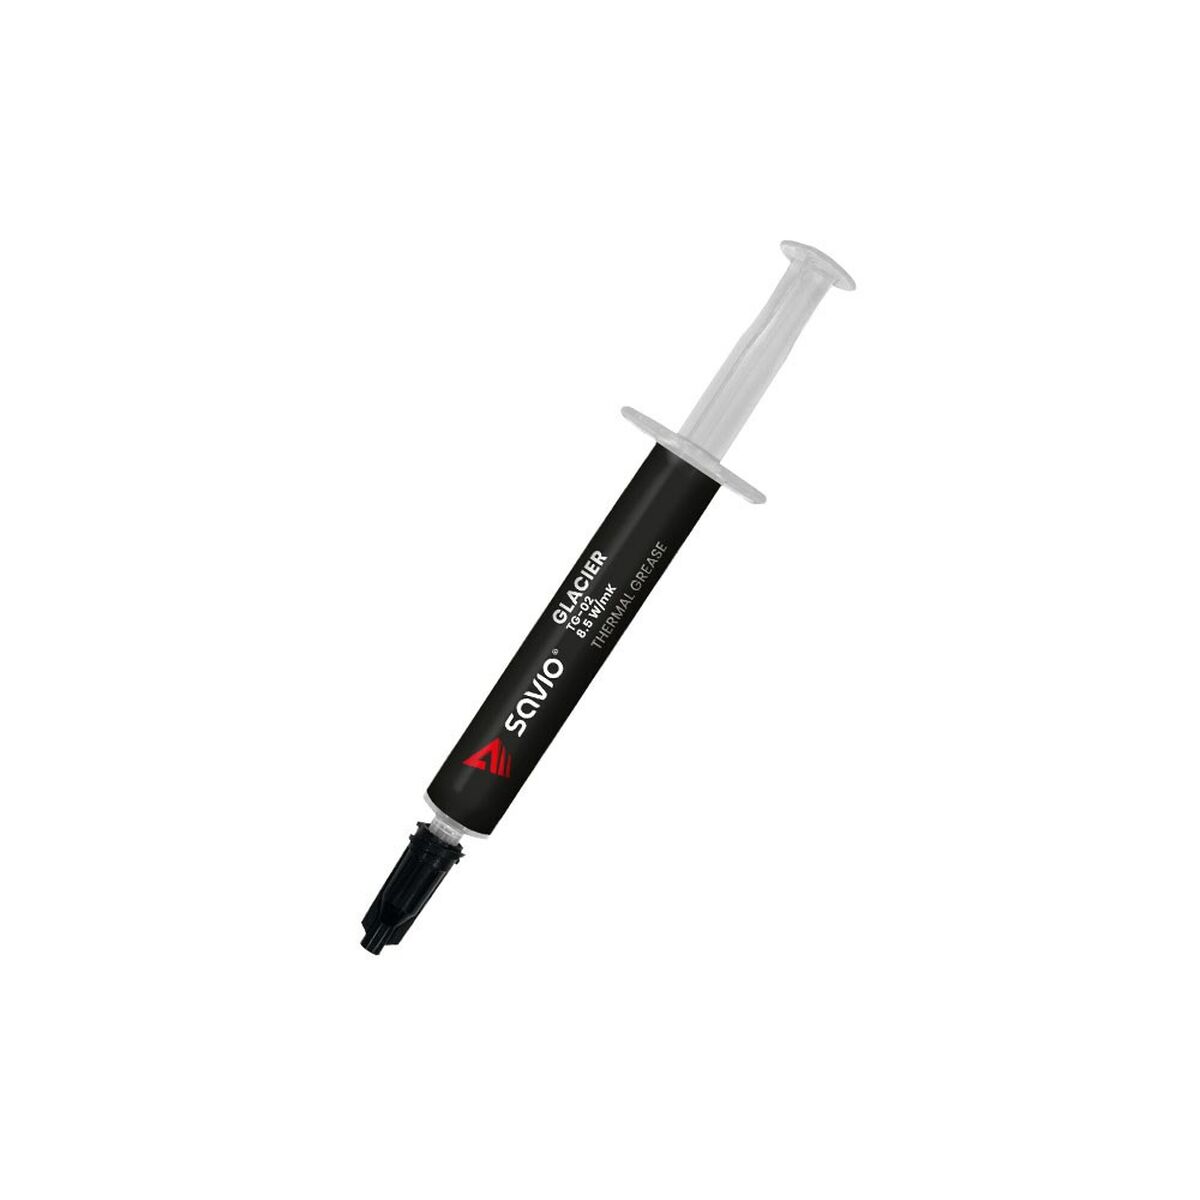 Thermal Paste Syringe Savio TG-02 4G 4 g